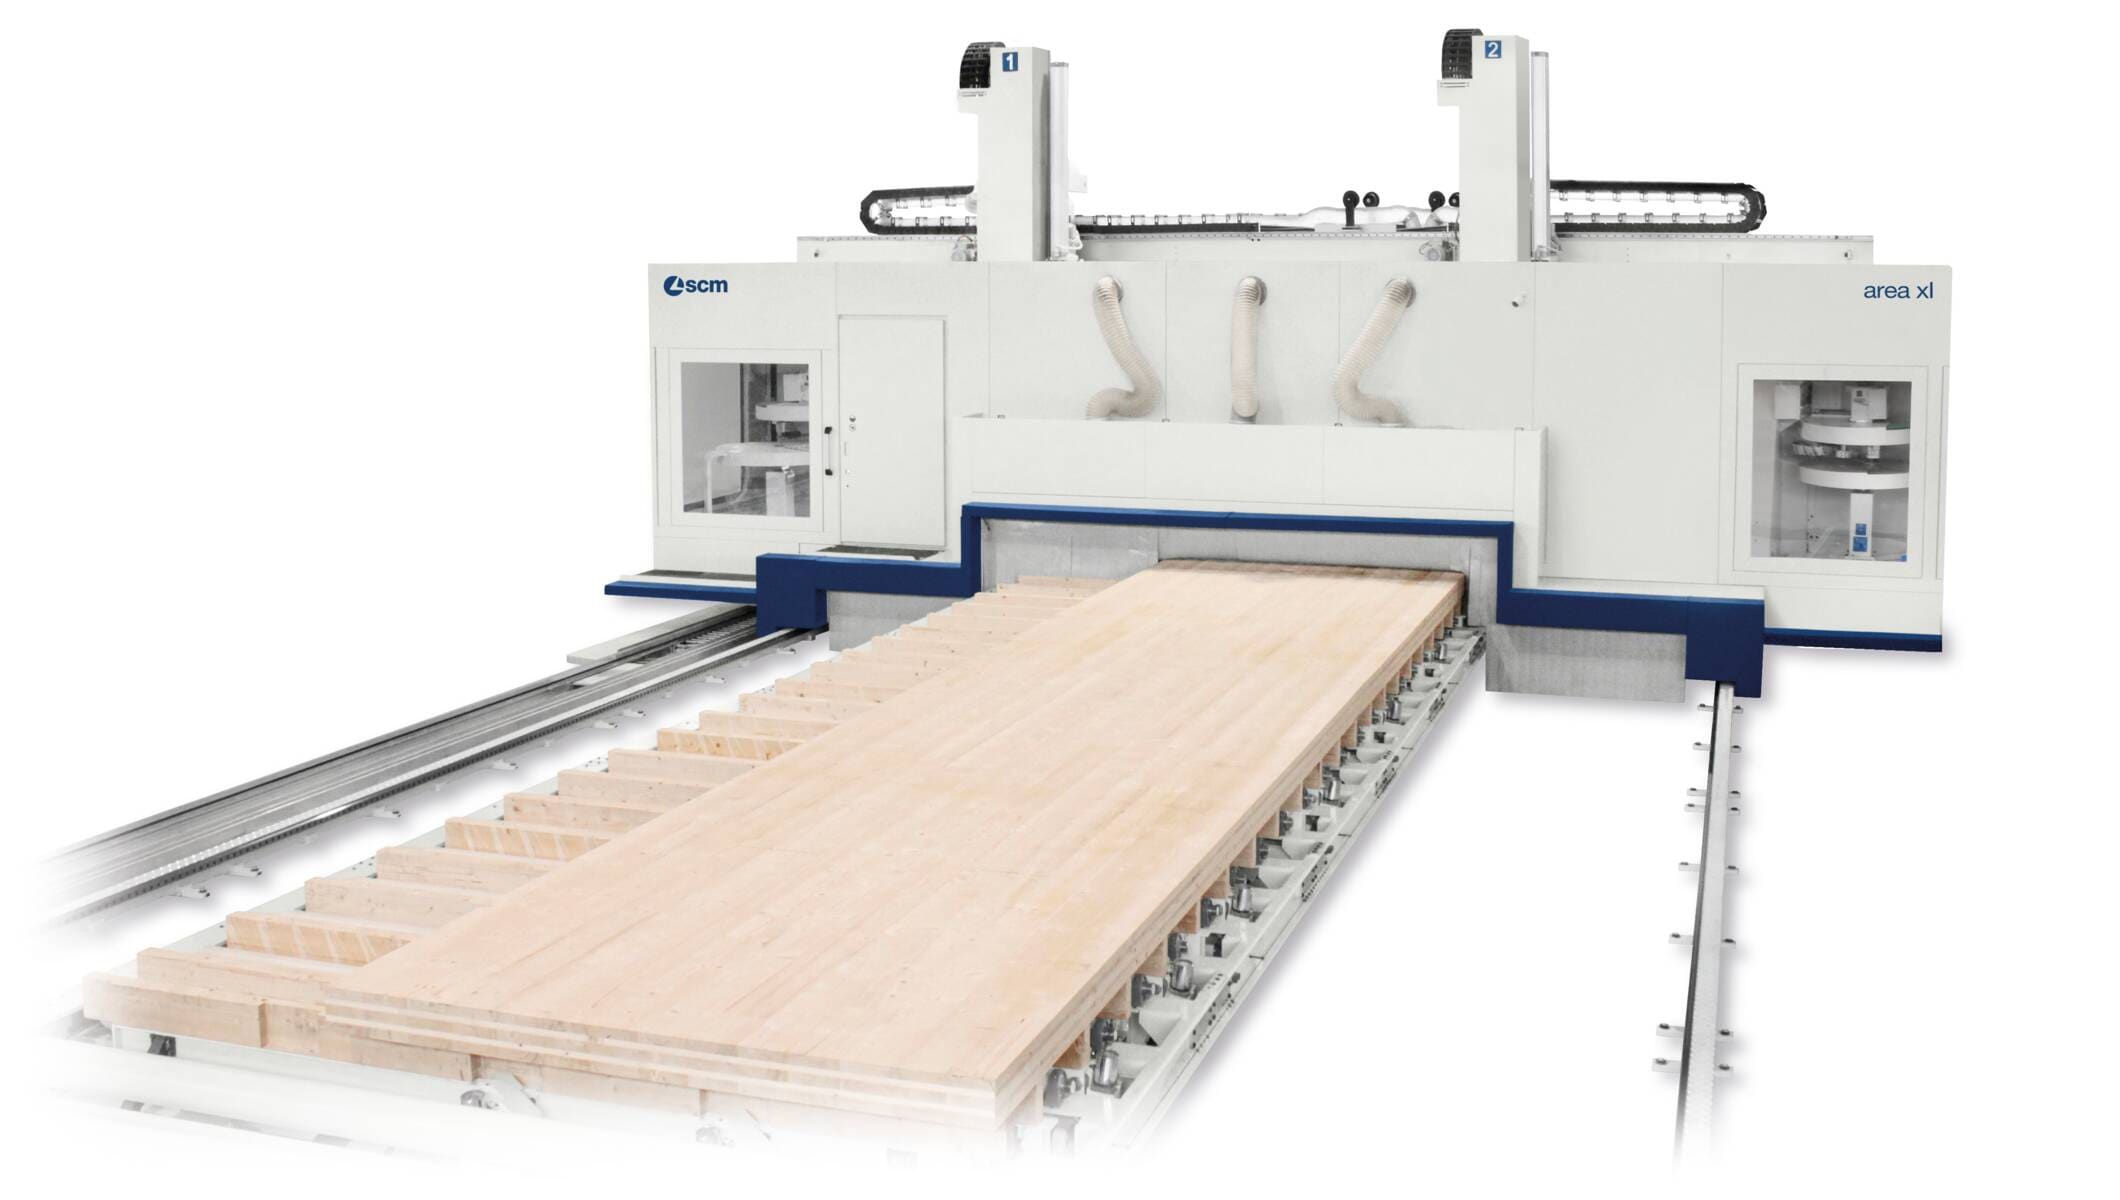 Systeme für den Holzbau - CNC -Bearbeitungszentren für den Holzbau - area xl